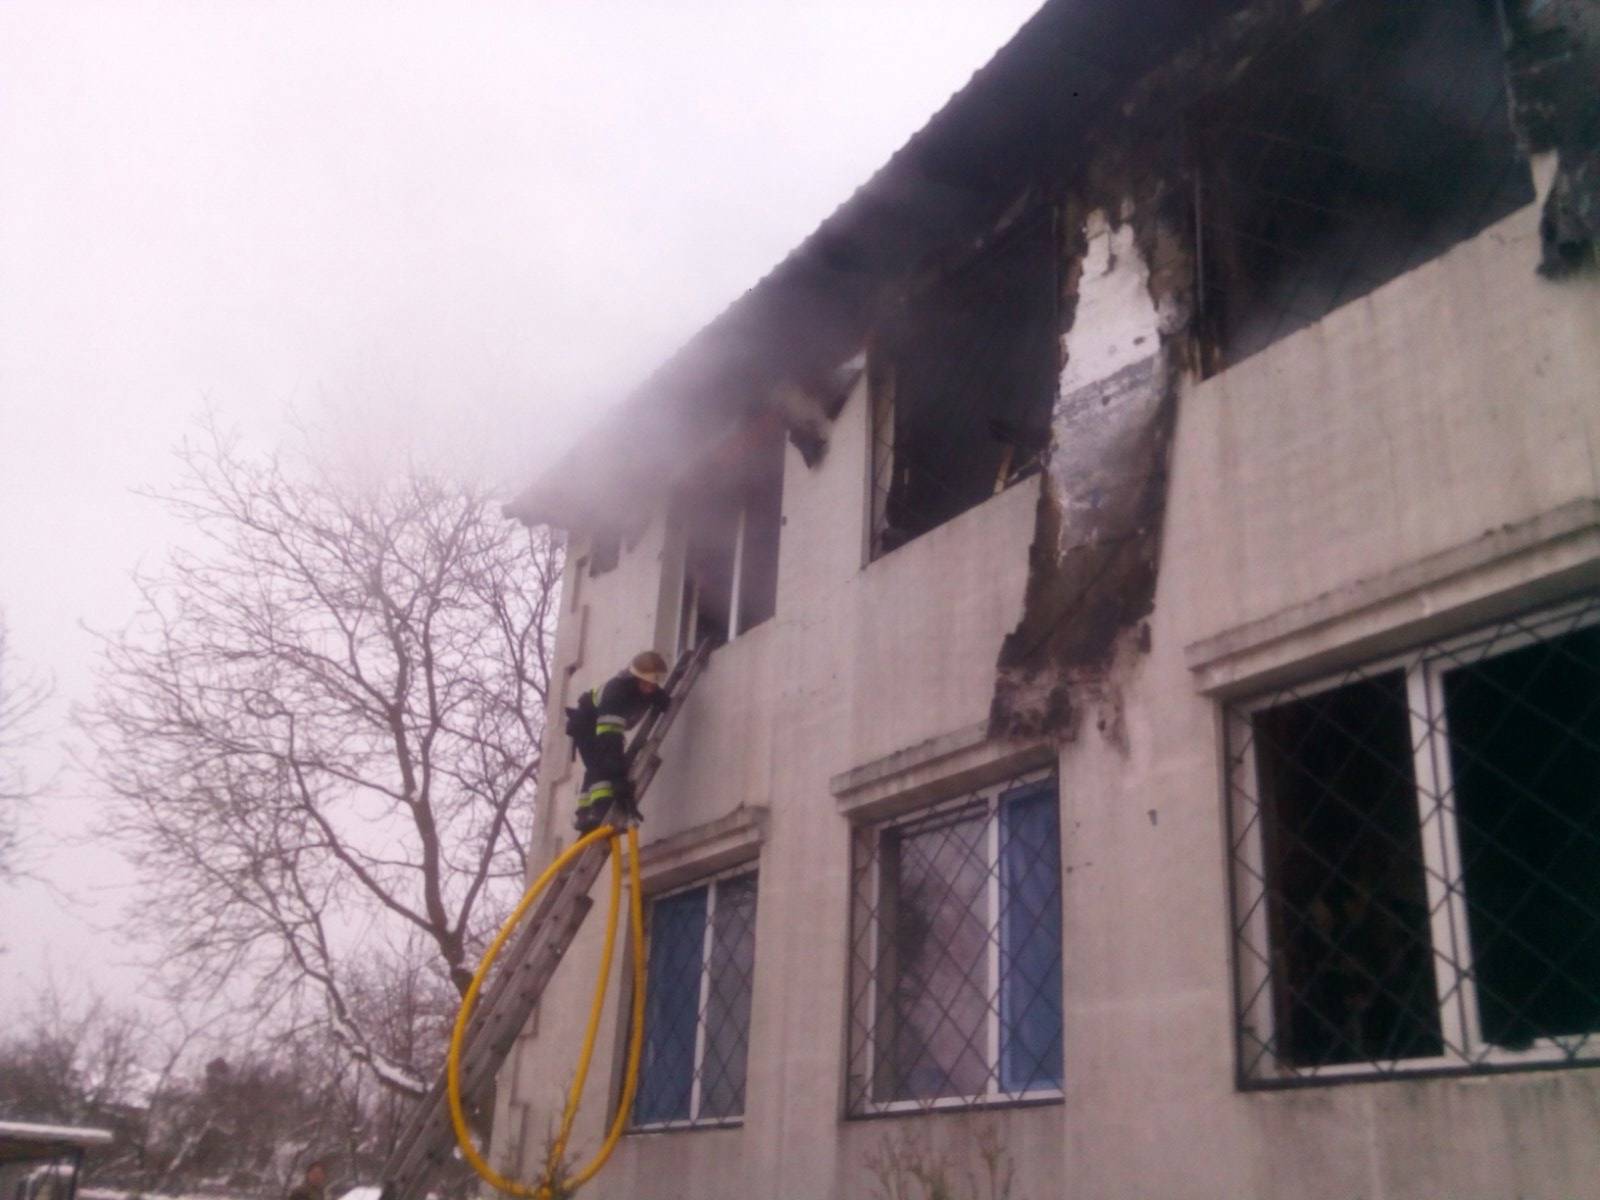 Пожар в Харькове ликвидировали, Шмыгаль созвал срочное заседание правительства